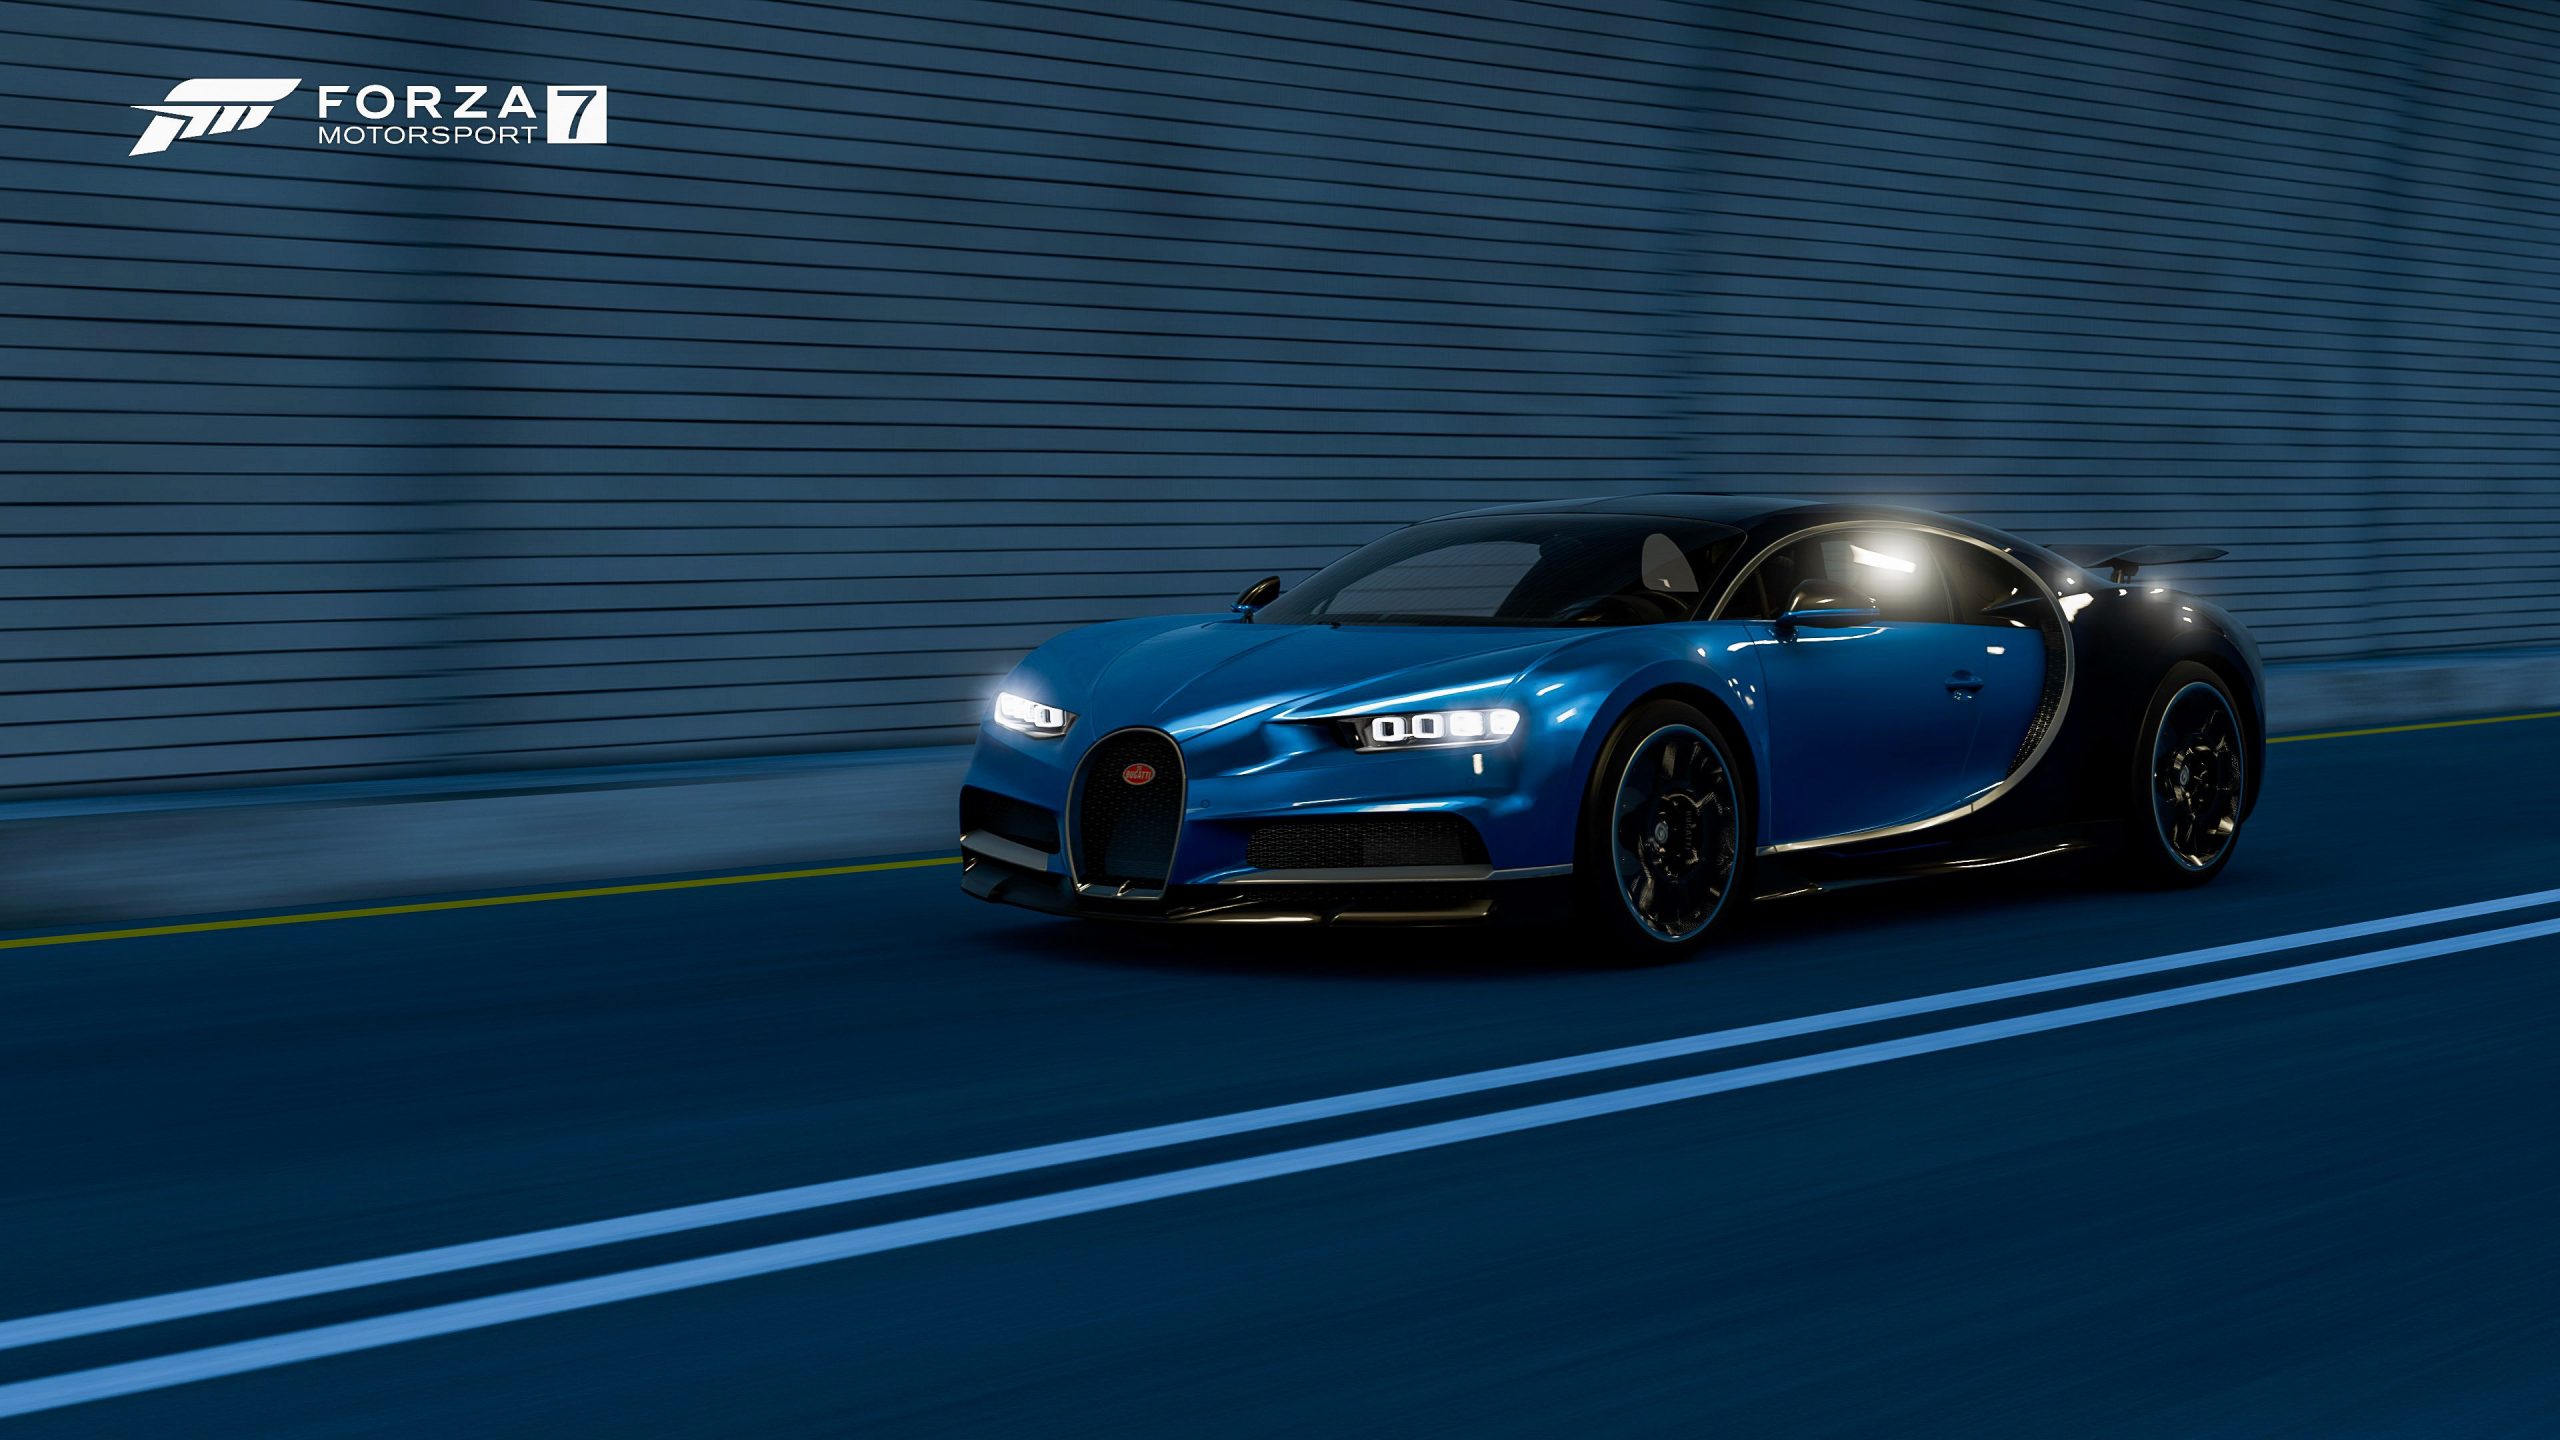 Bugatti download wallpaper image